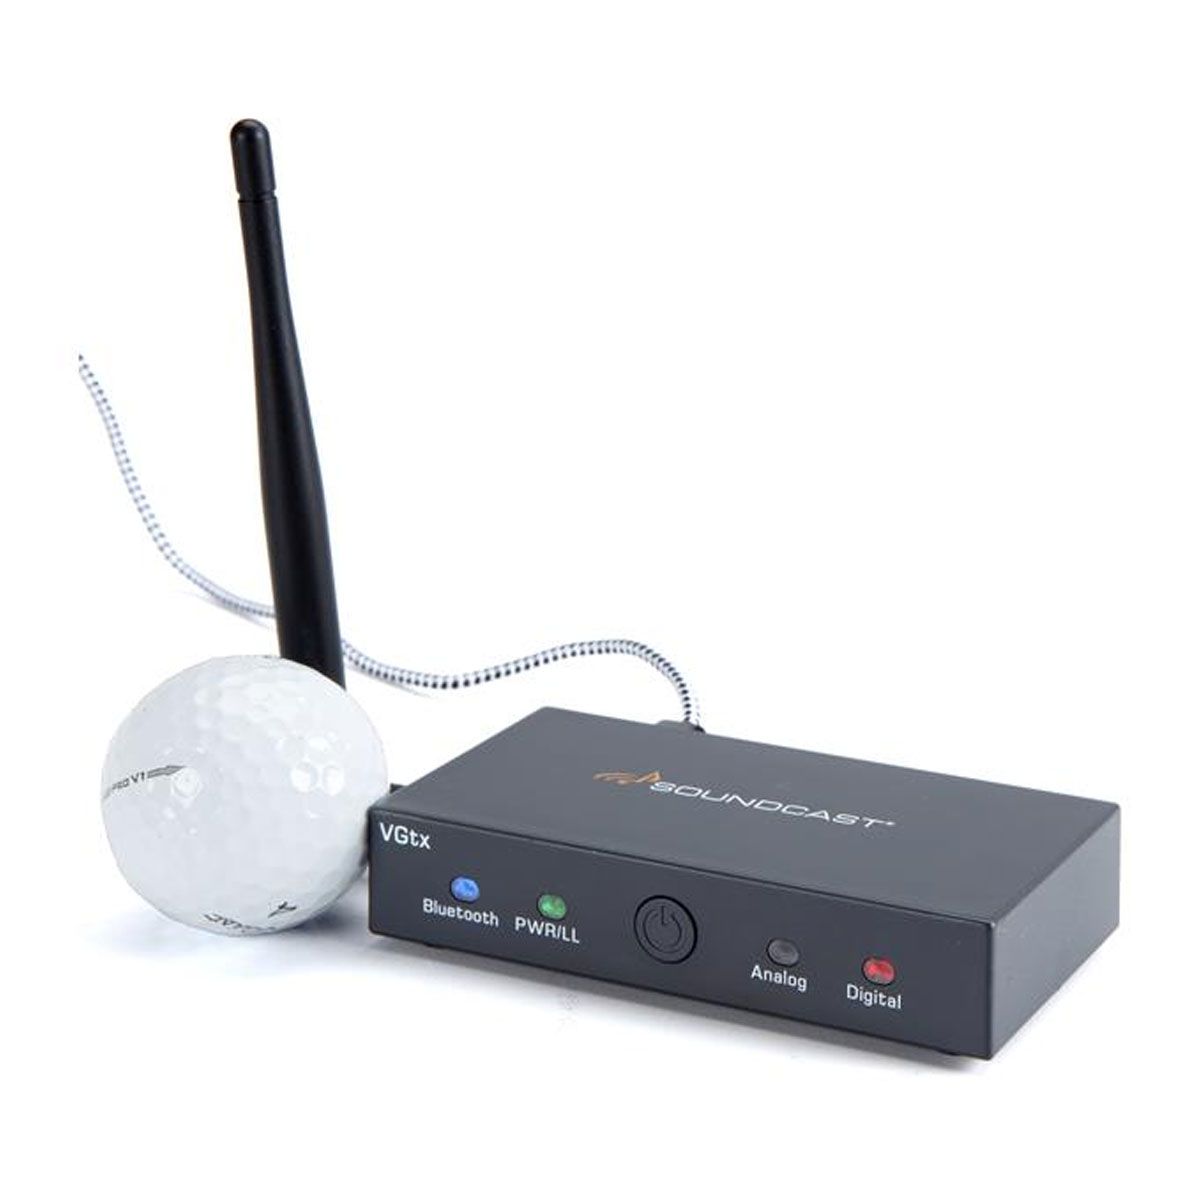 Soundcast VGtx
Bluetooth® wireless TV/headphone transmitter